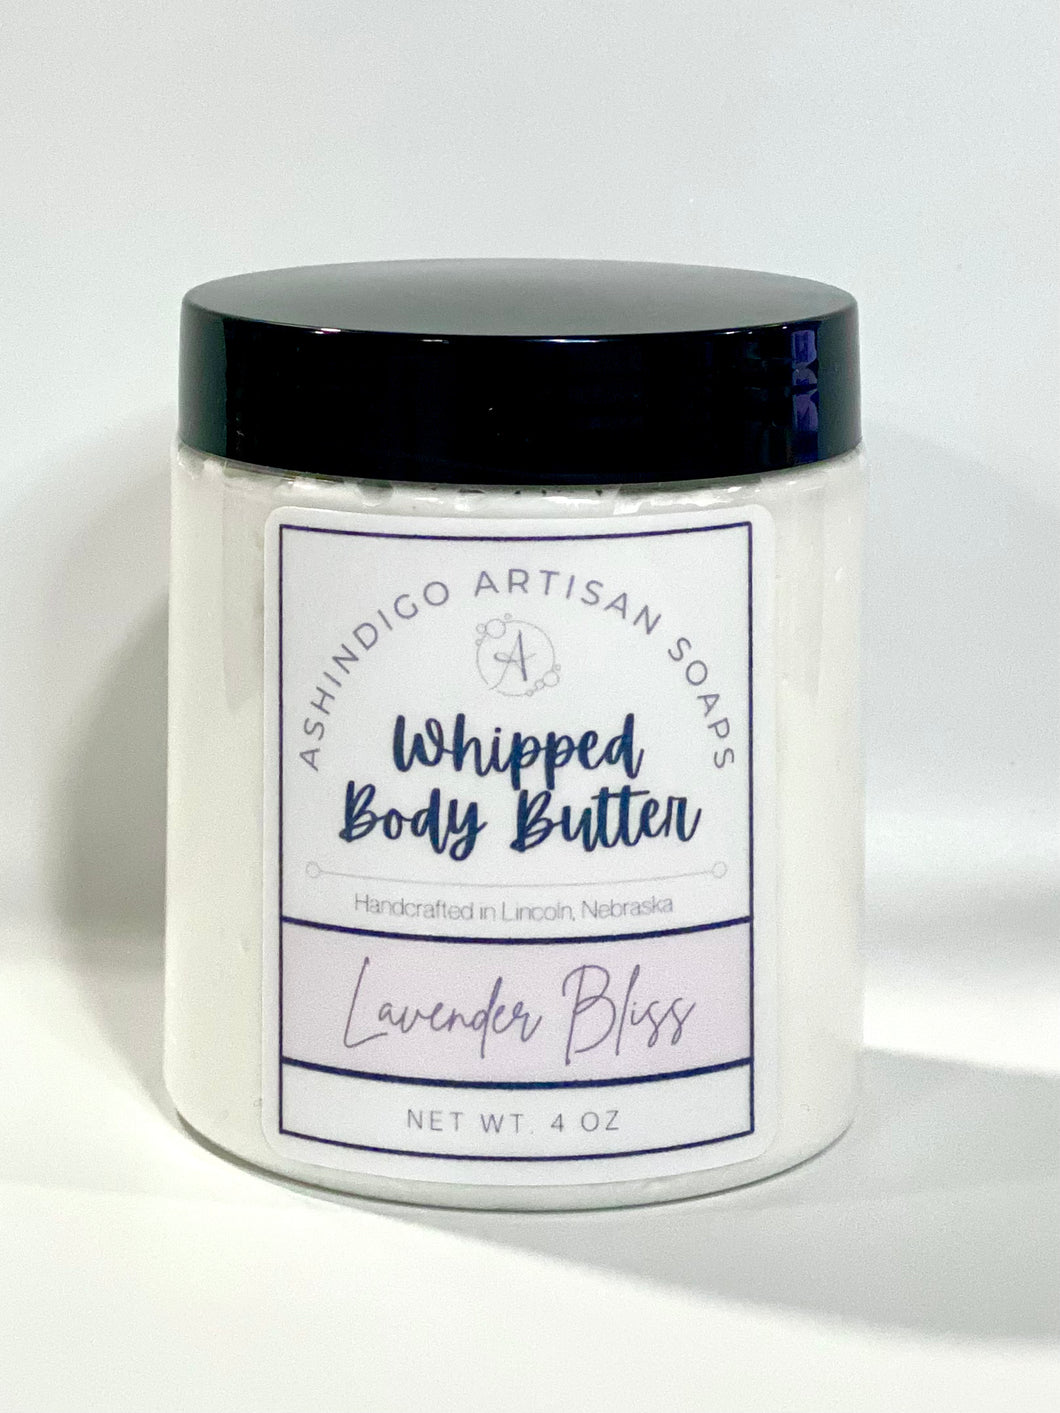 Lavender Bliss Body Butter